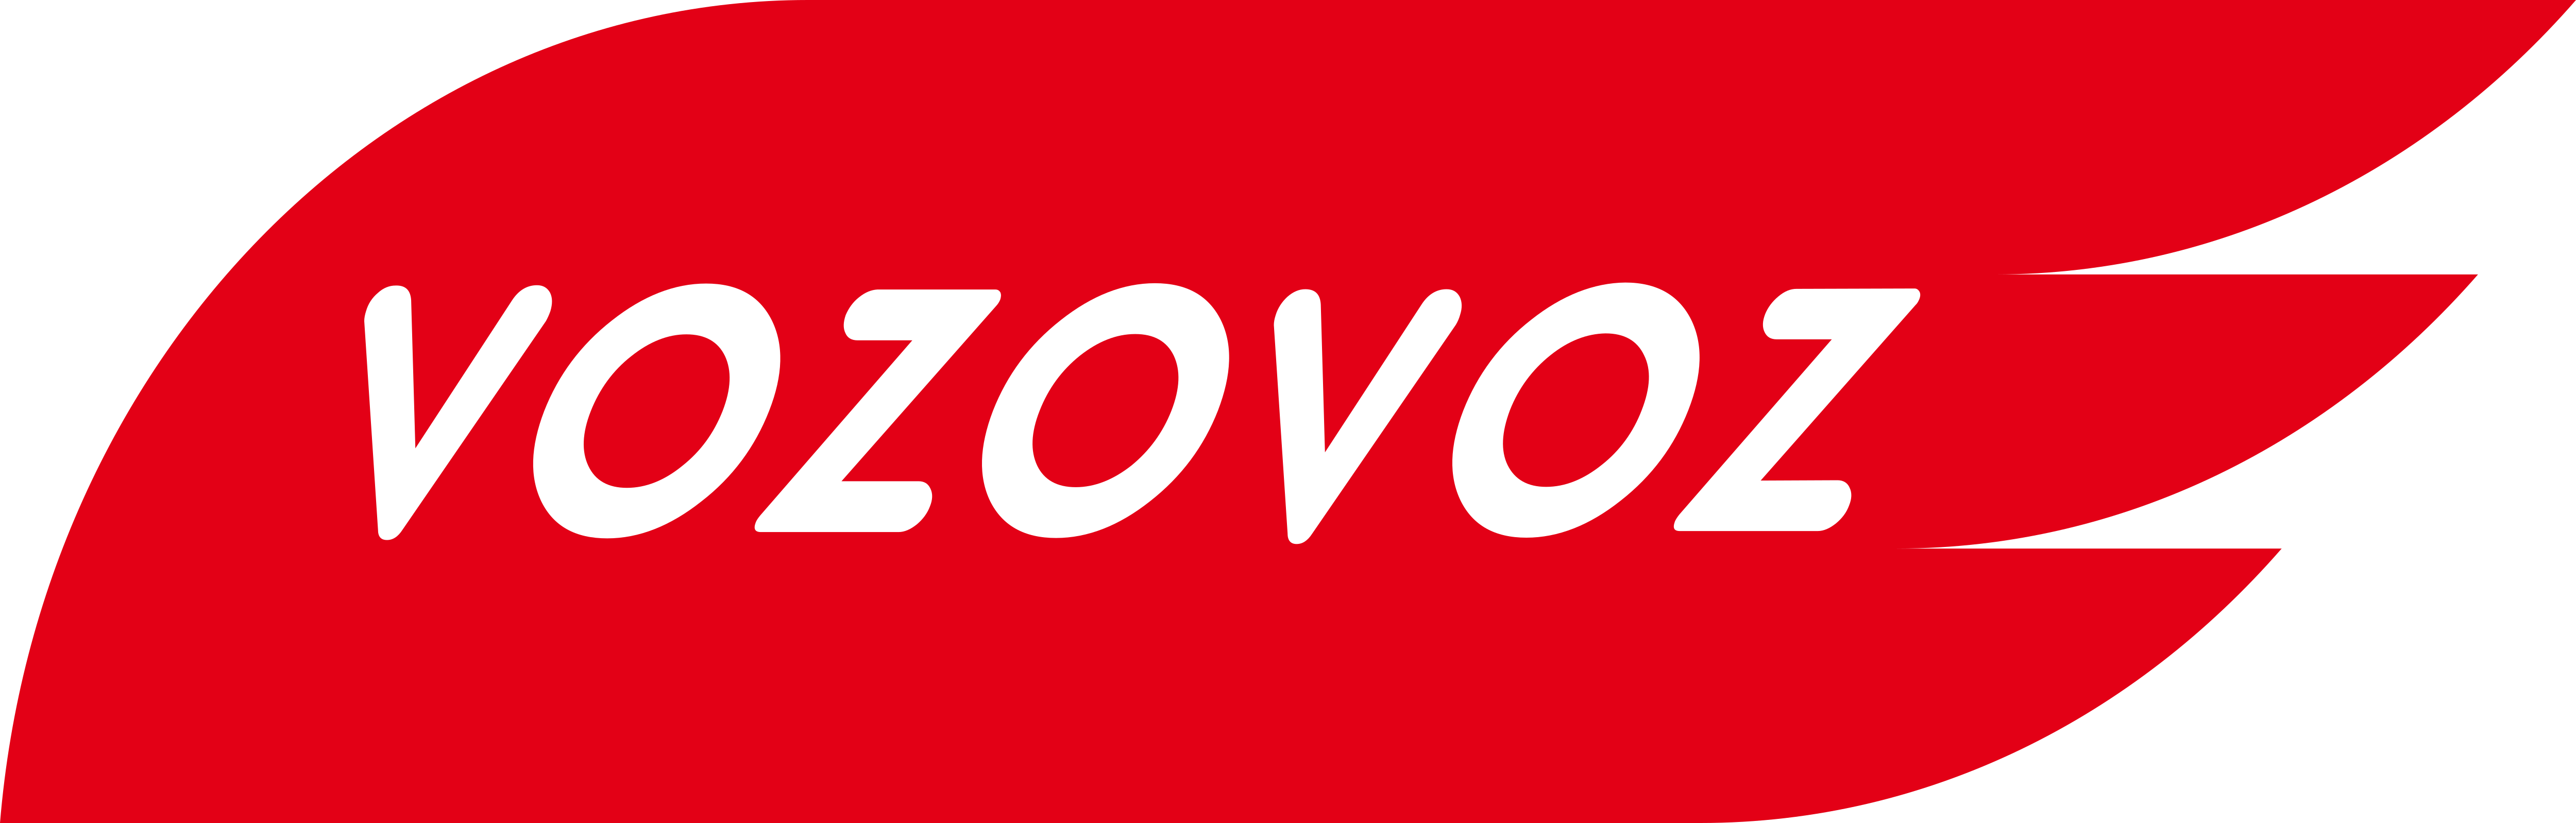 Компания возовоз возовоз тк. Возовоз логотип. ООО Возовоз. Vozovoz транспортная компания. Логотип транспортной компании.